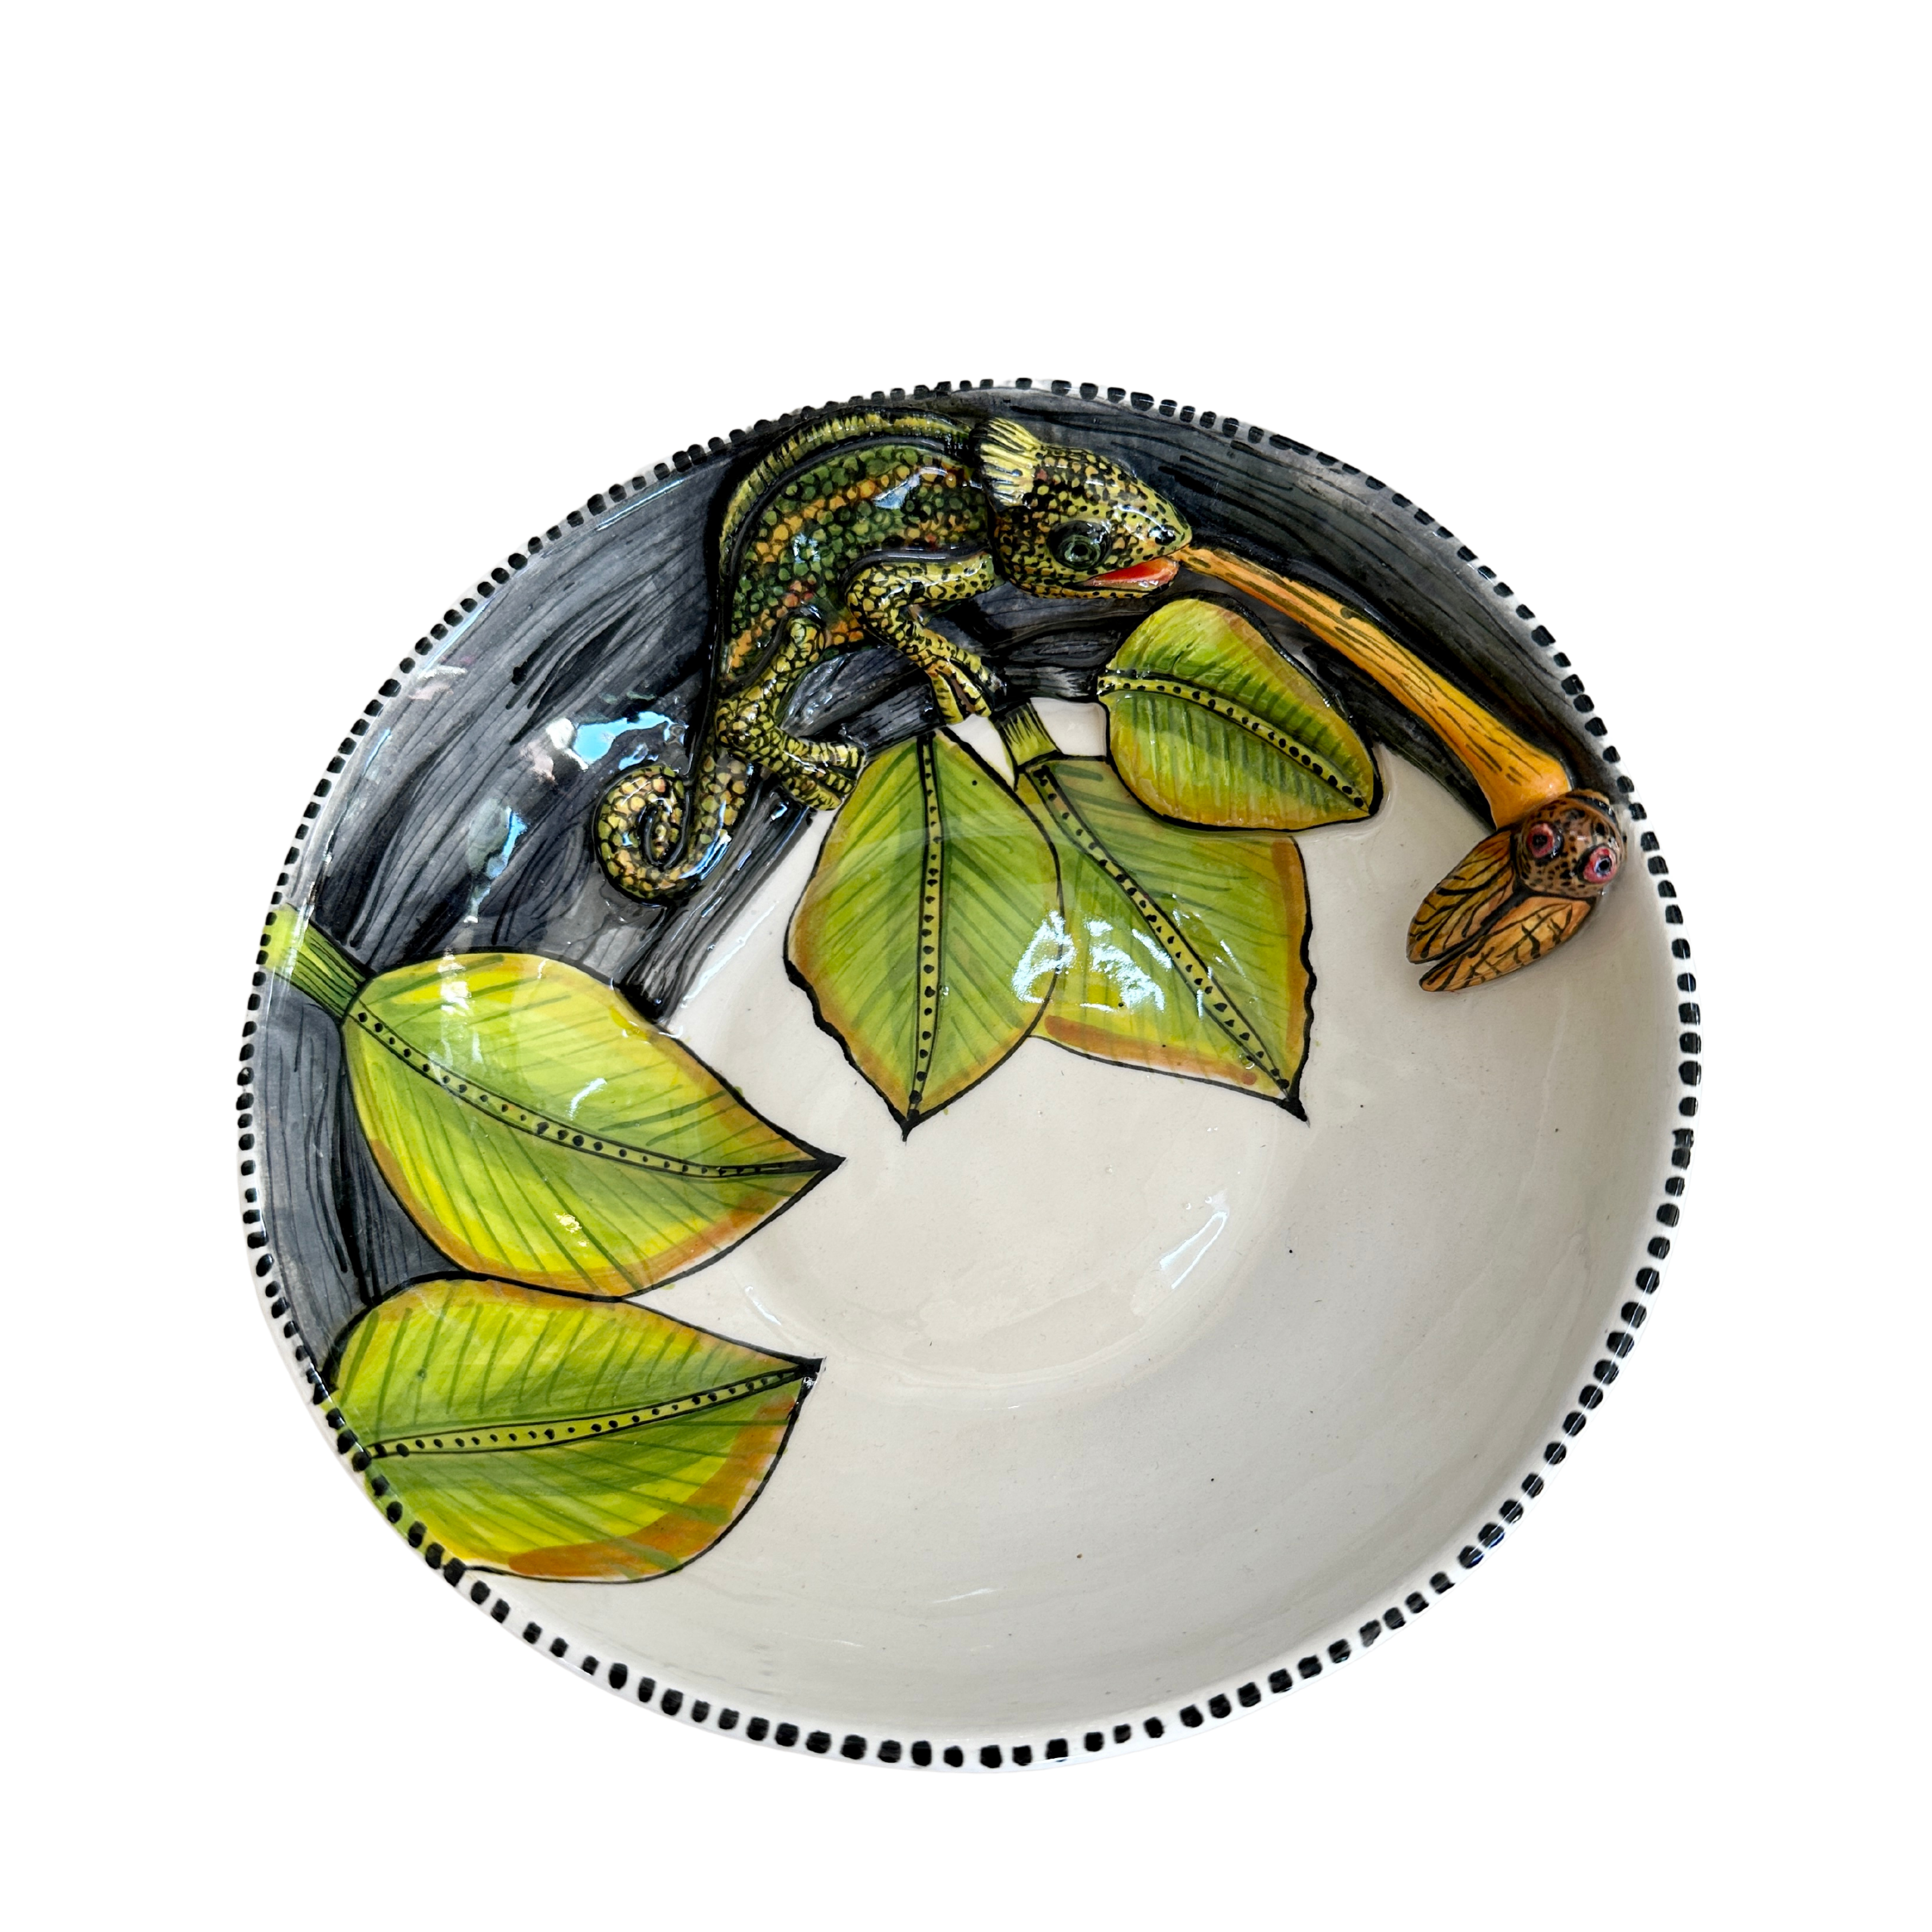 3D Animated Ceramic Chameleon Bowl